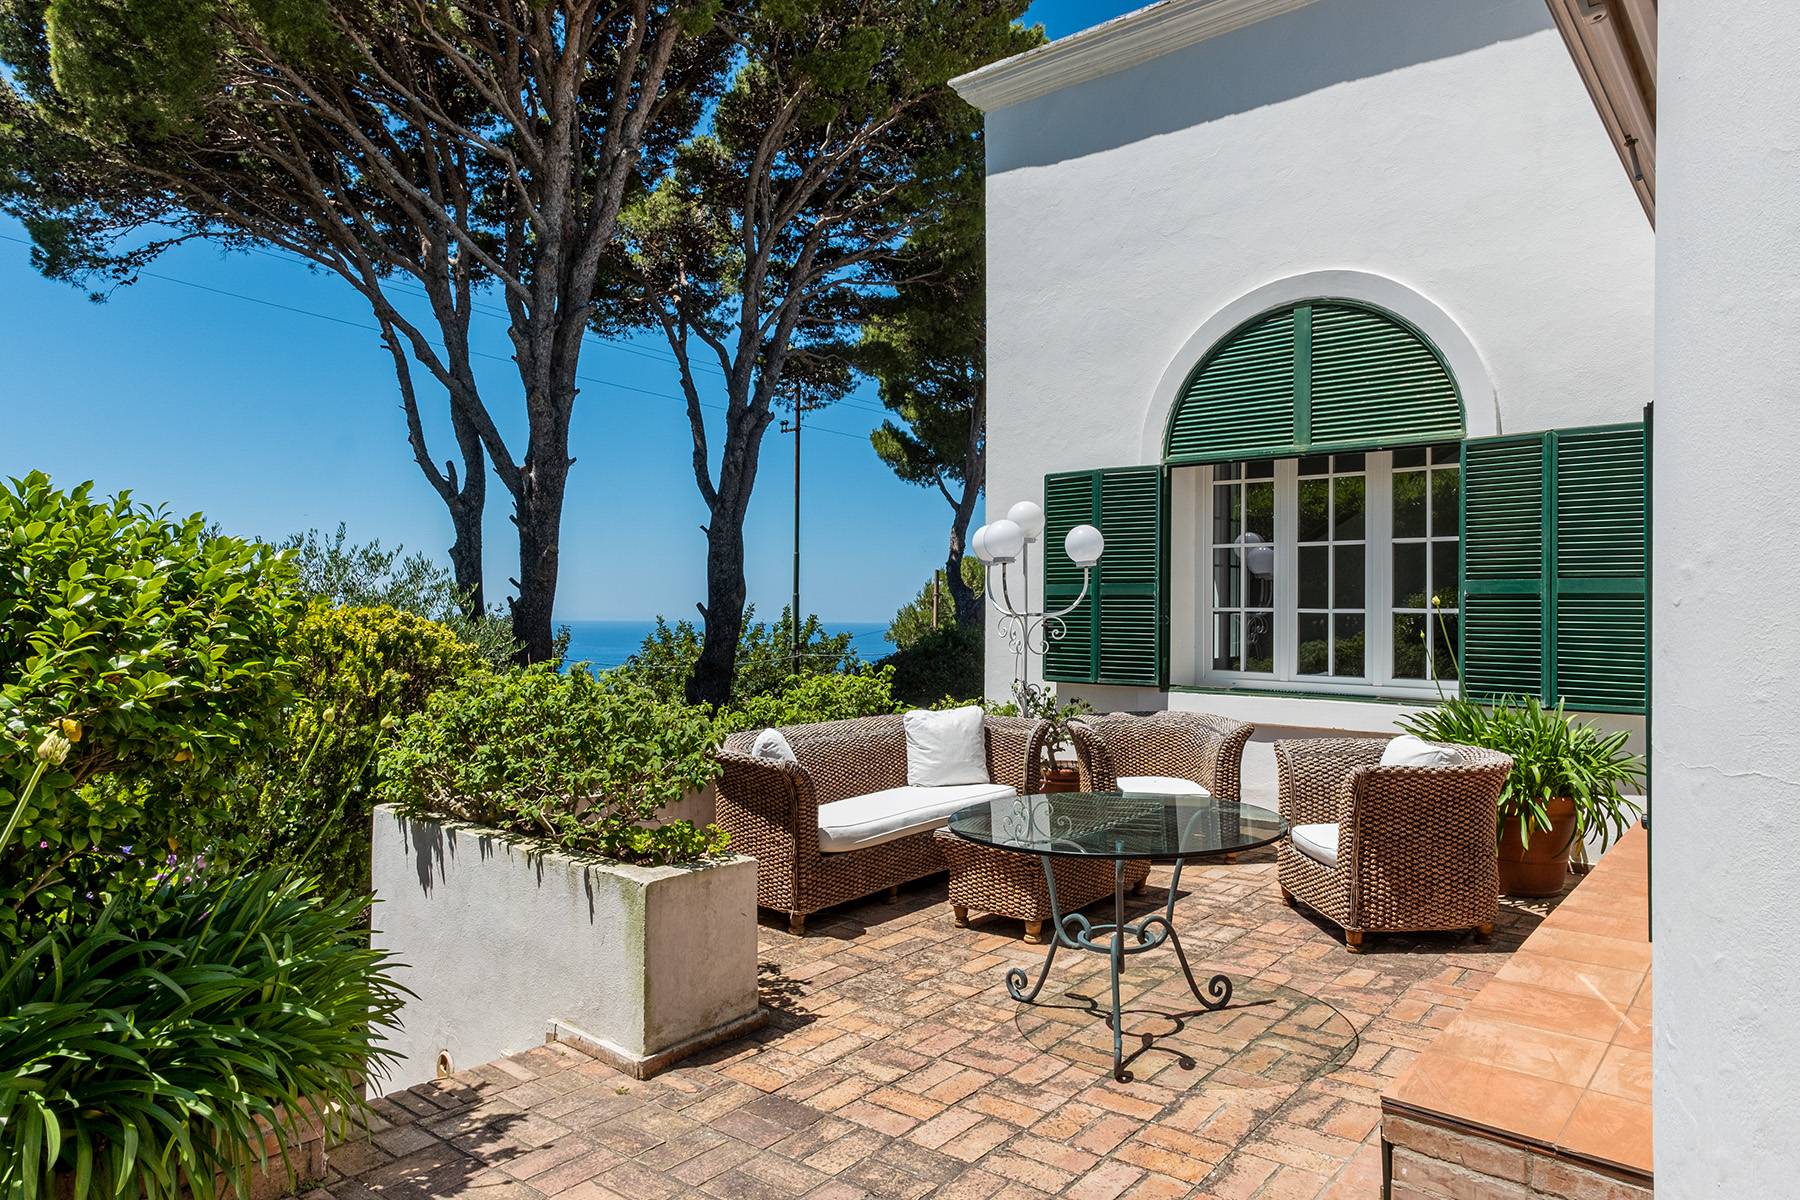 Villa in Vendita a Capri: 5 locali, 300 mq - Foto 1